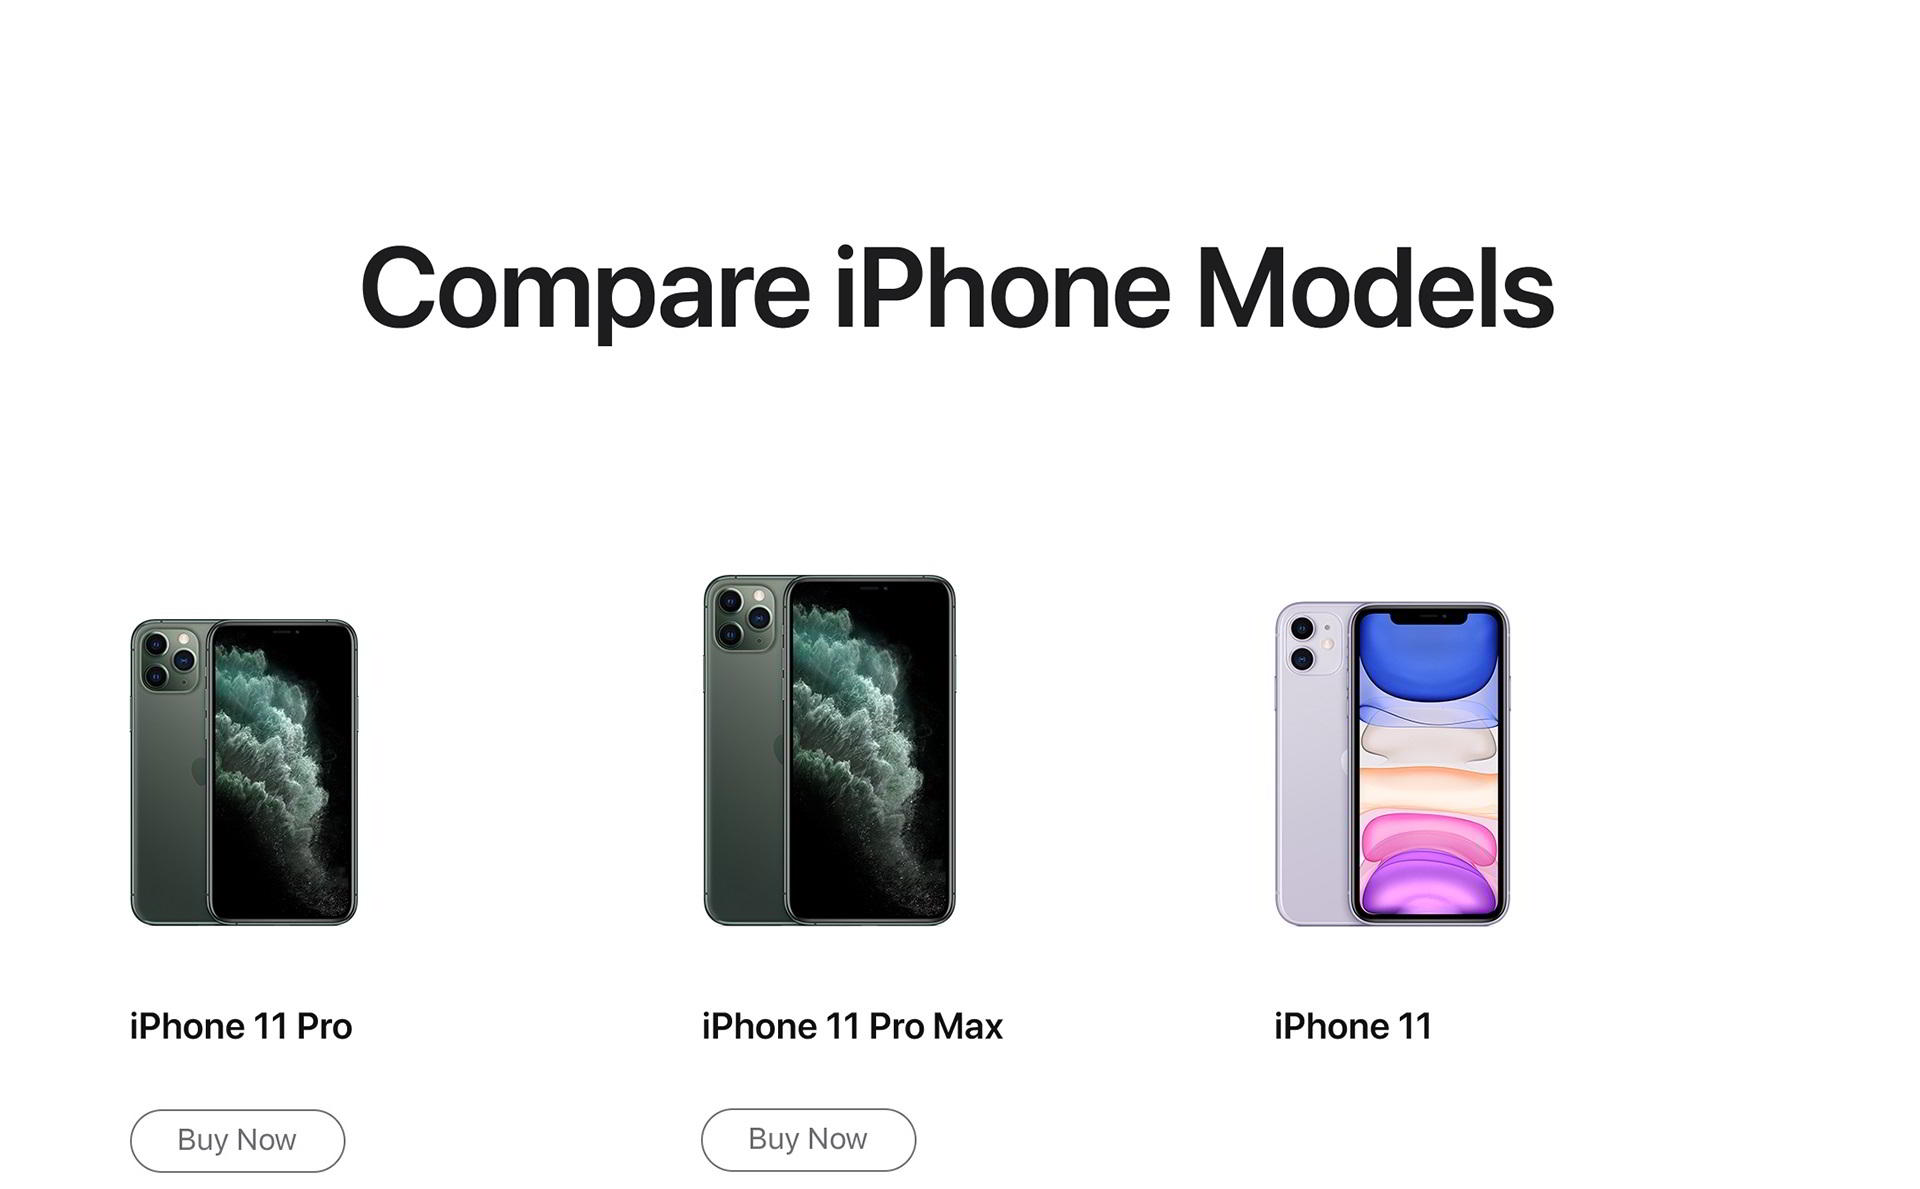 apple-iphone11pro-max-price-uae-etisalat-comparison-1